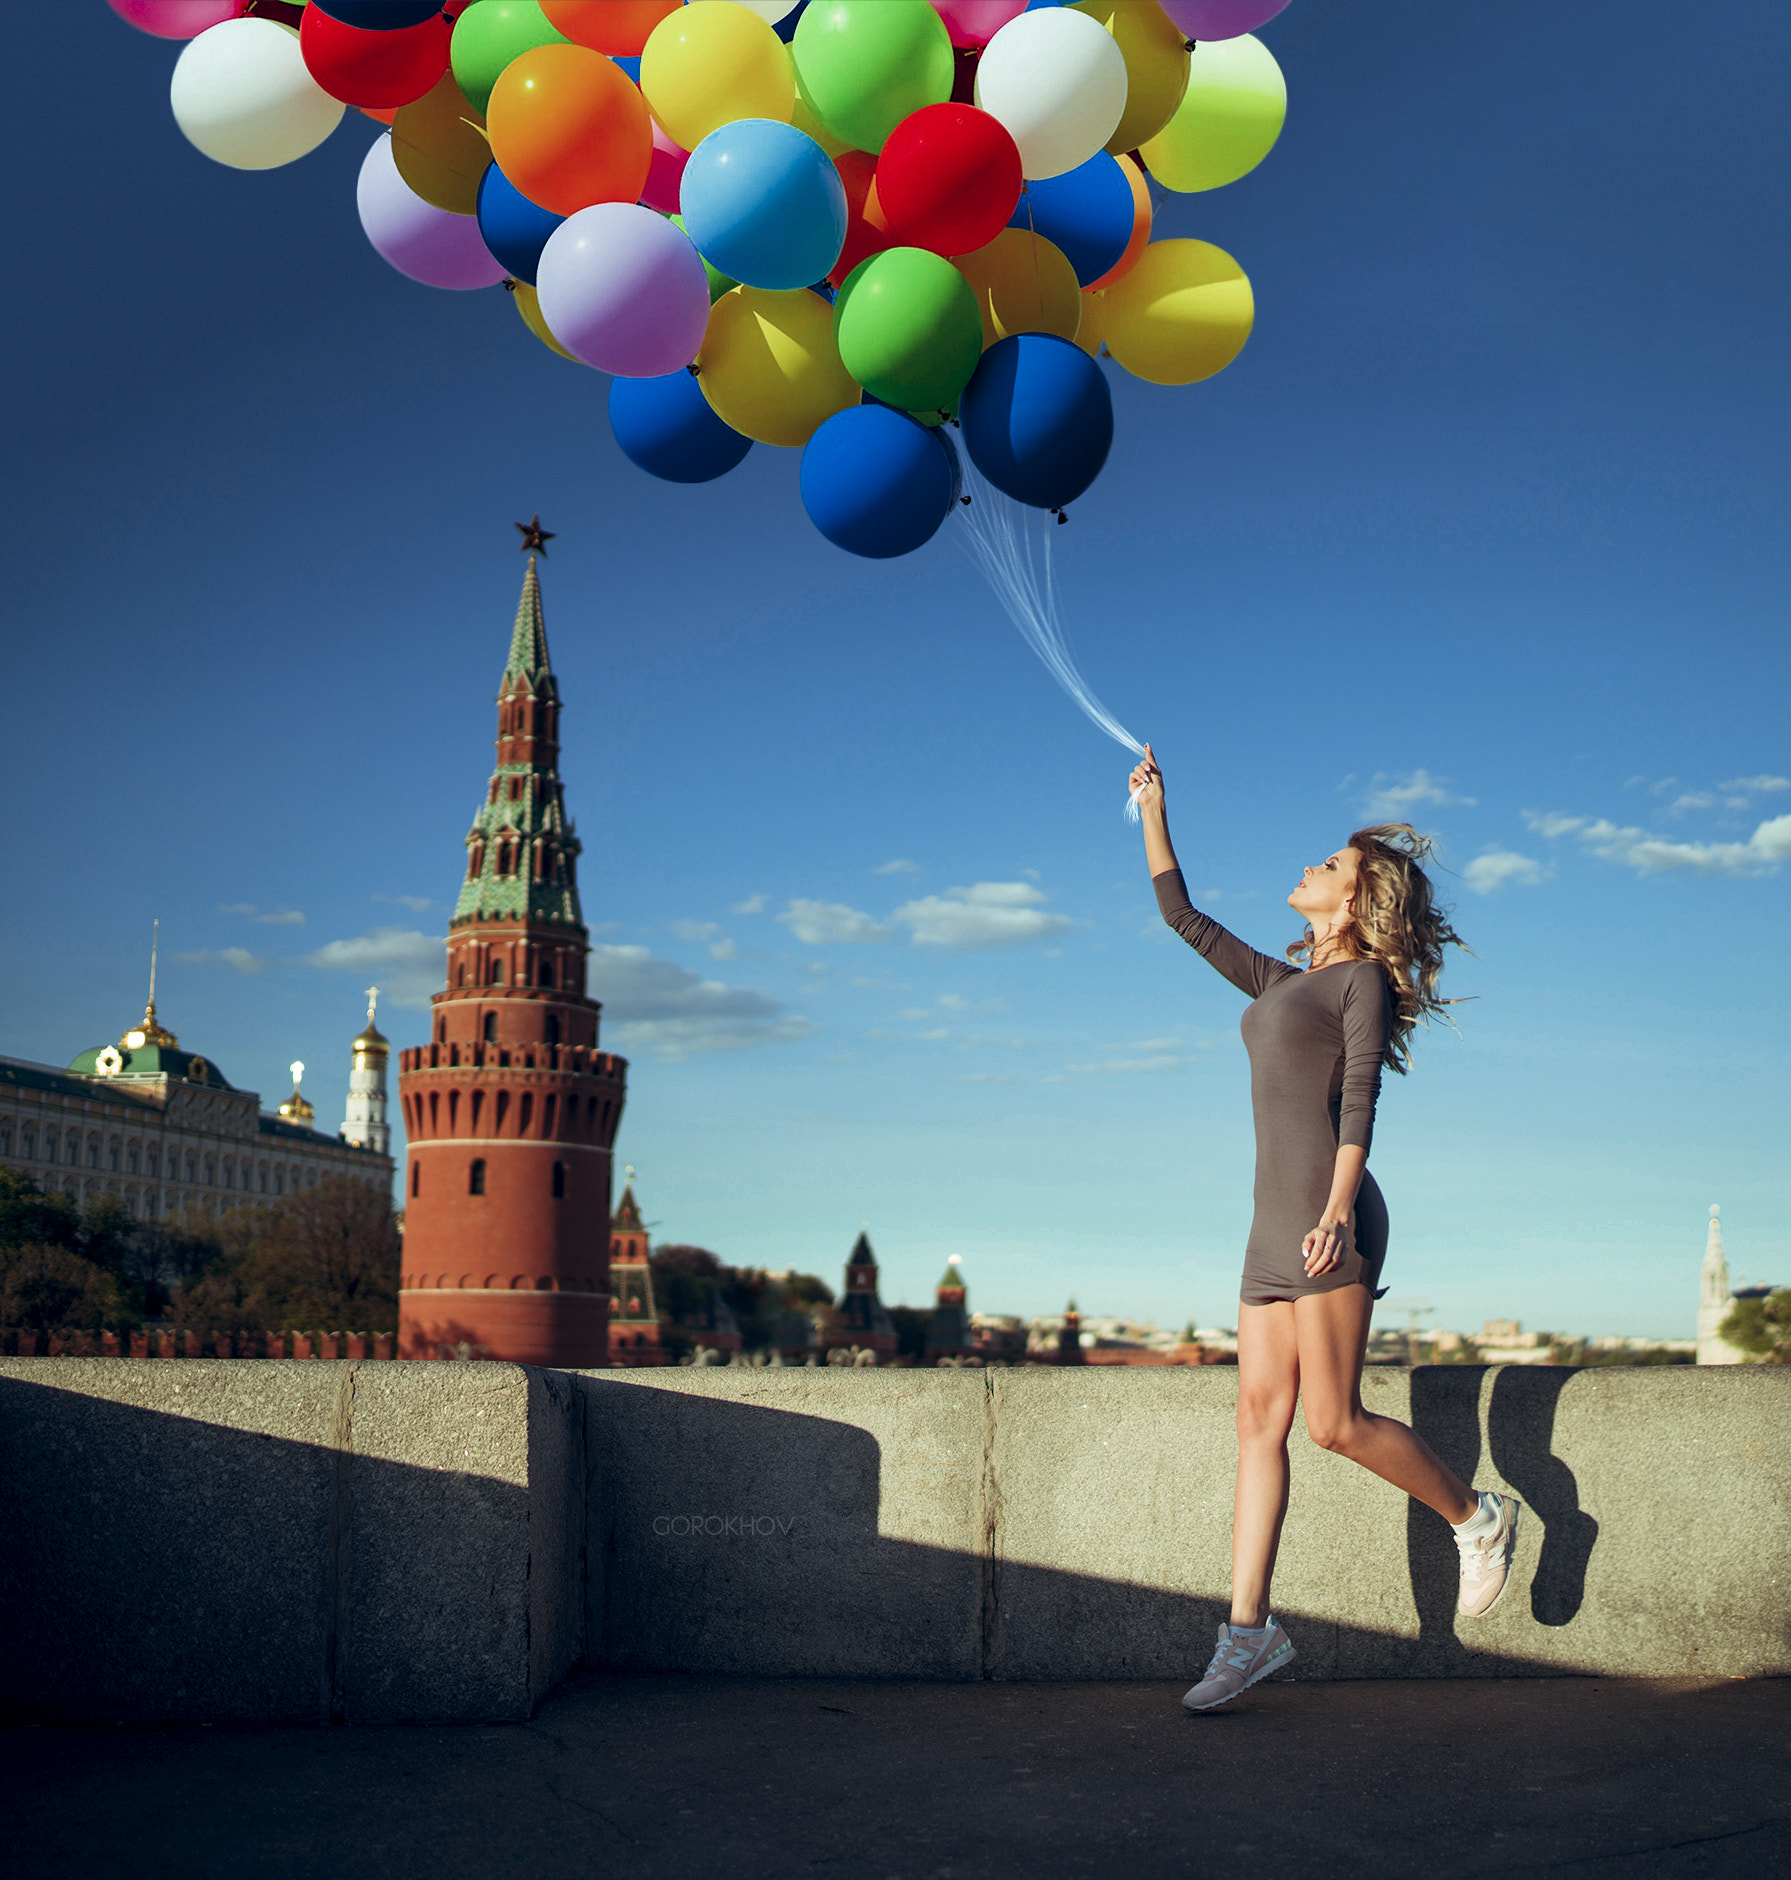 Women Model Balloon Ivan Gorokhov Moscow Kremlin Cityscape 1791x1880